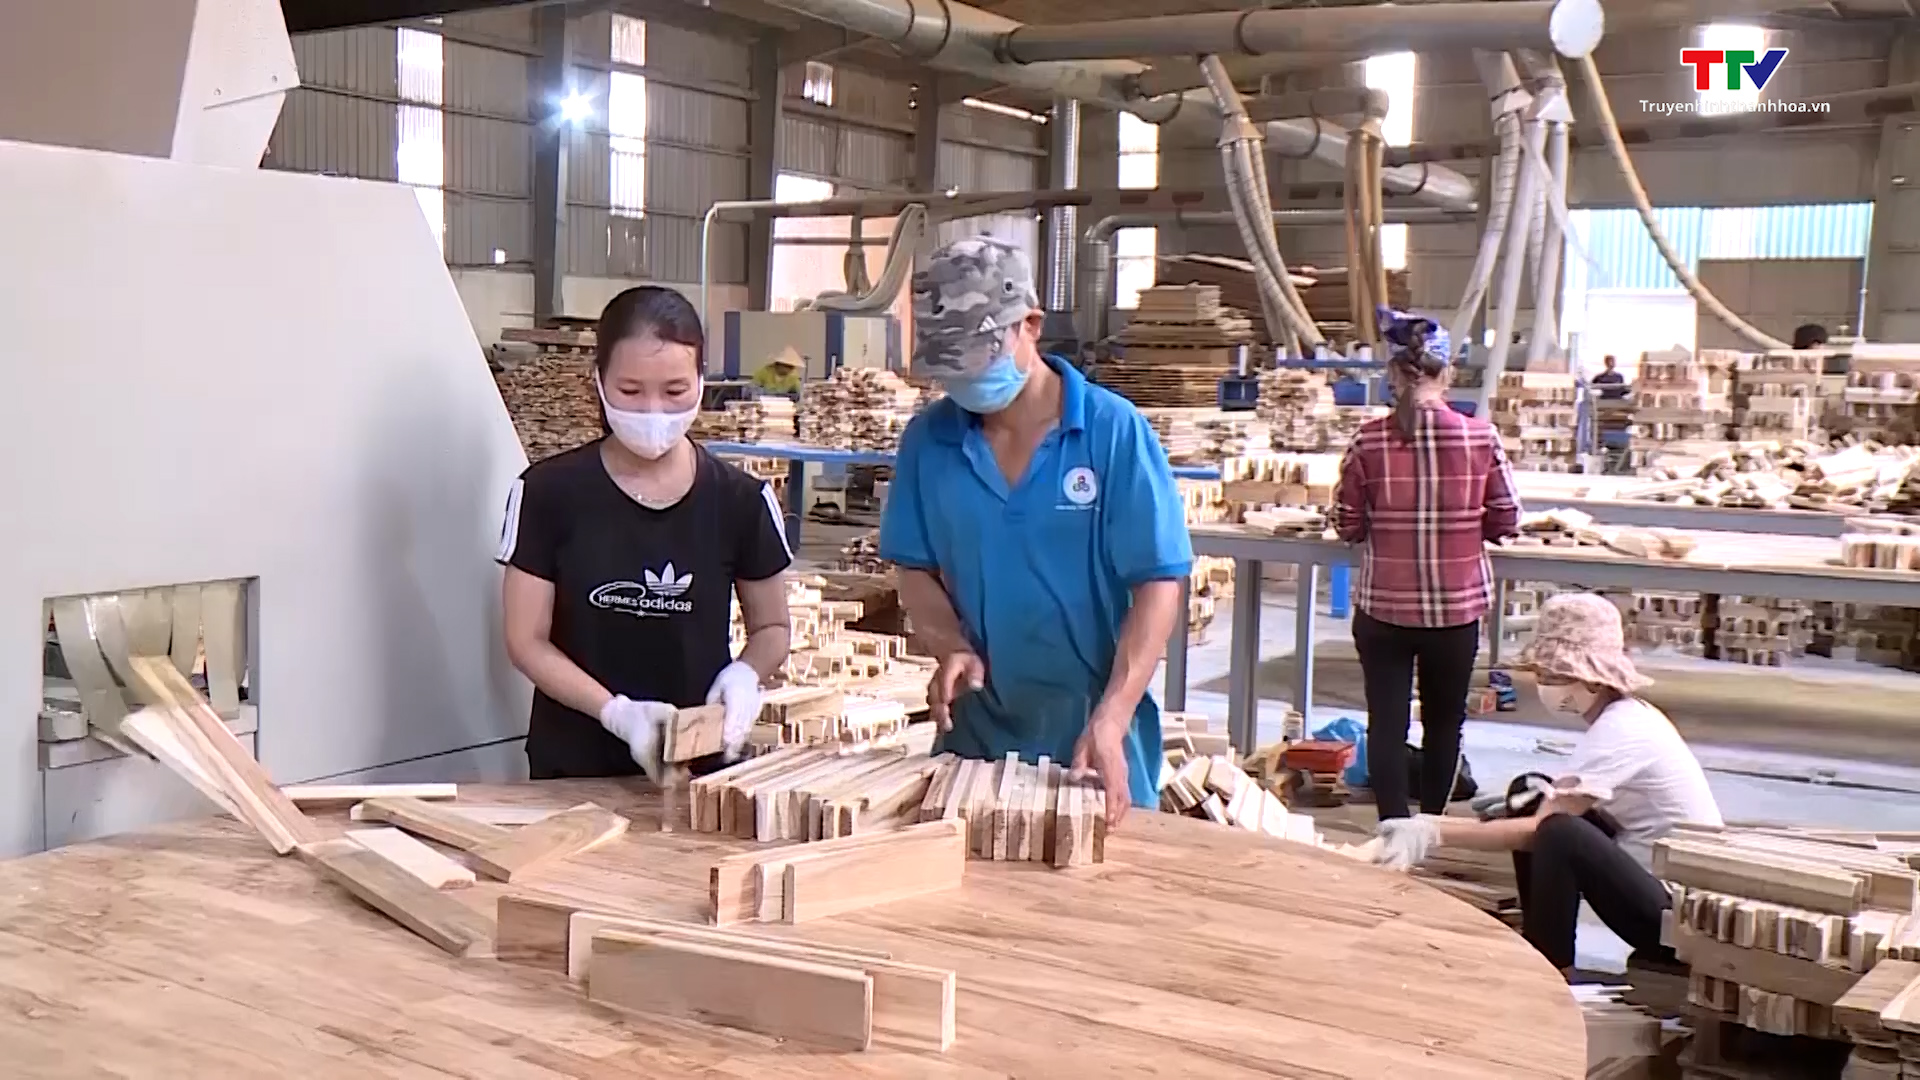 Tỉnh Thanh Hóa có 178 doanh nghiệp chế biến gỗ - Ảnh 2.